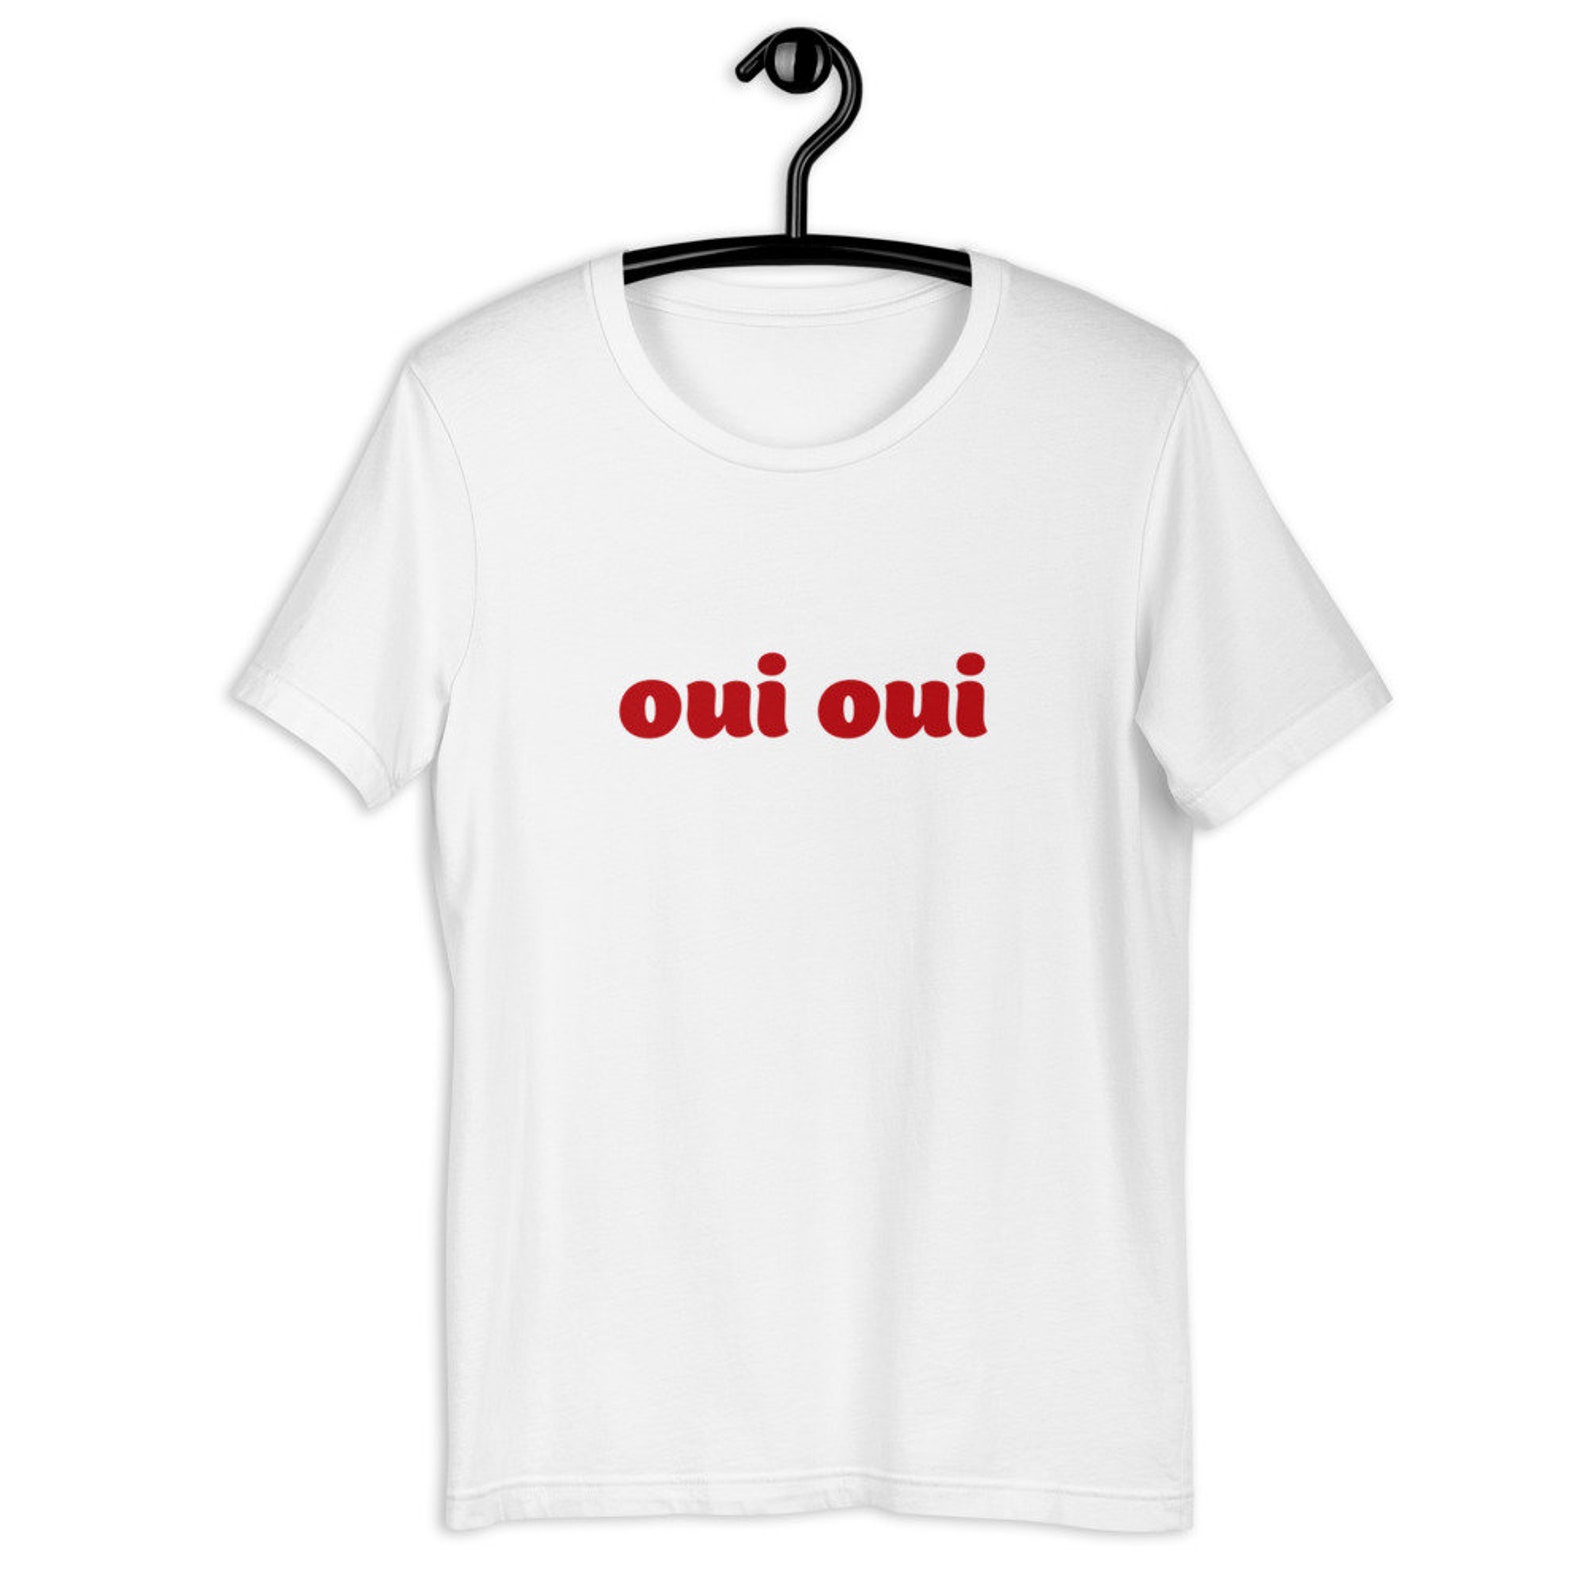 Oui Oui Short-Sleeve Unisex T-Shirt French Shirt France | Etsy